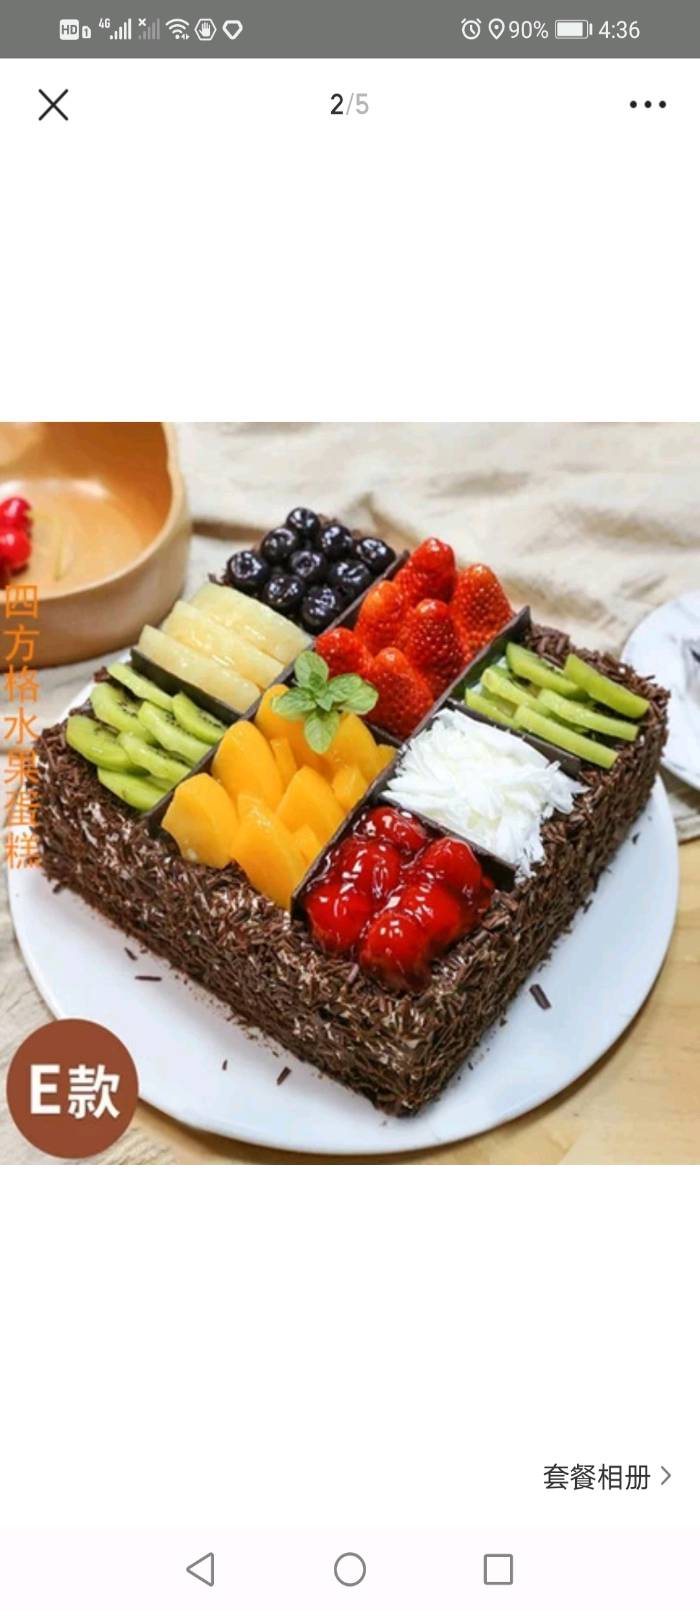 江阴市麦香园蛋糕